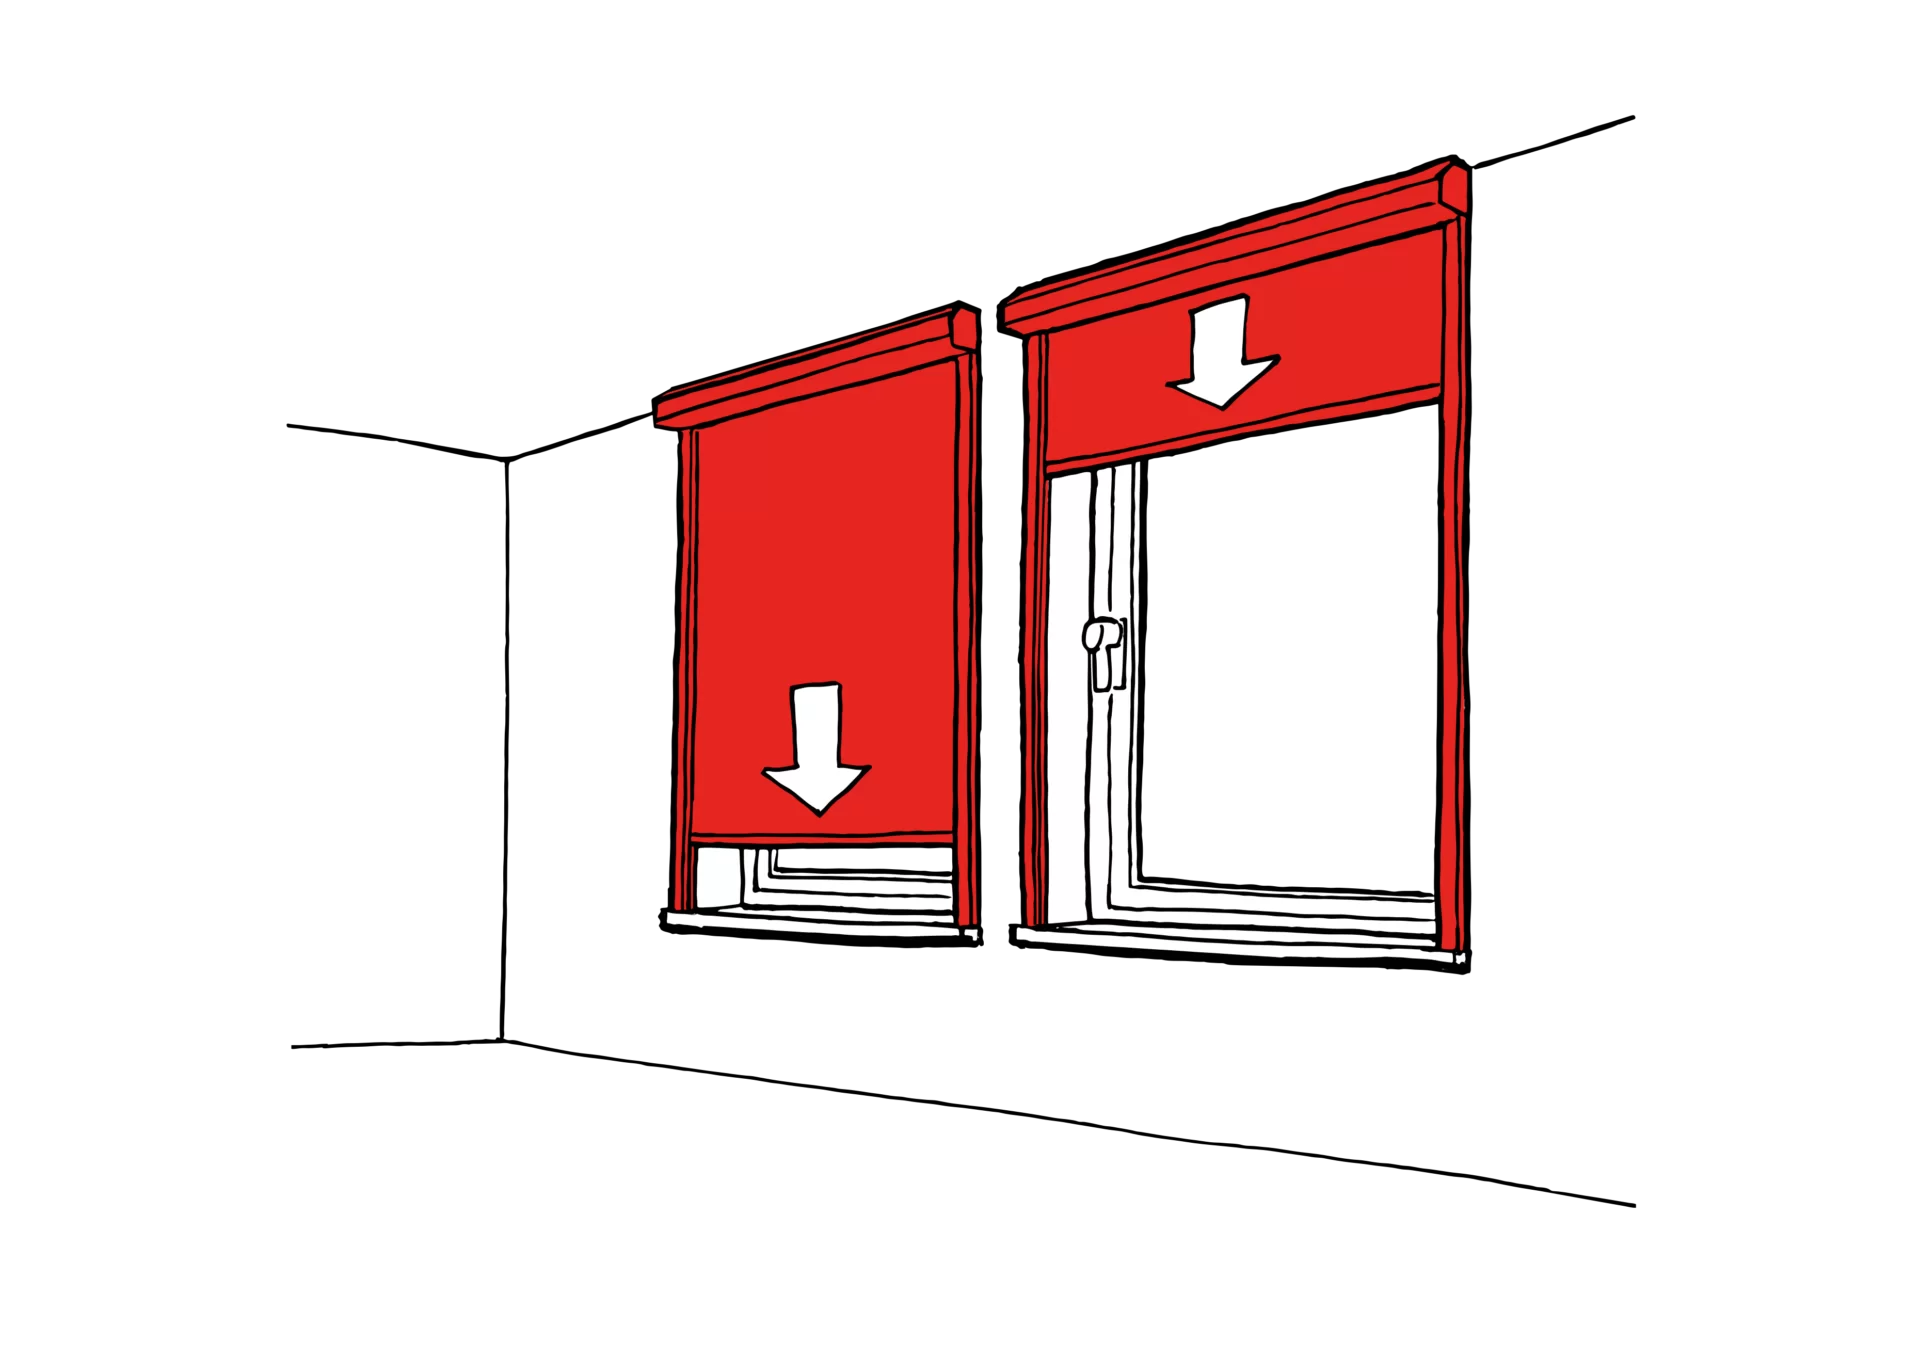 Imagem do tipo mockup mostrando o sentido de fechamento da cortina corta-fogo modelo Fibershield-W